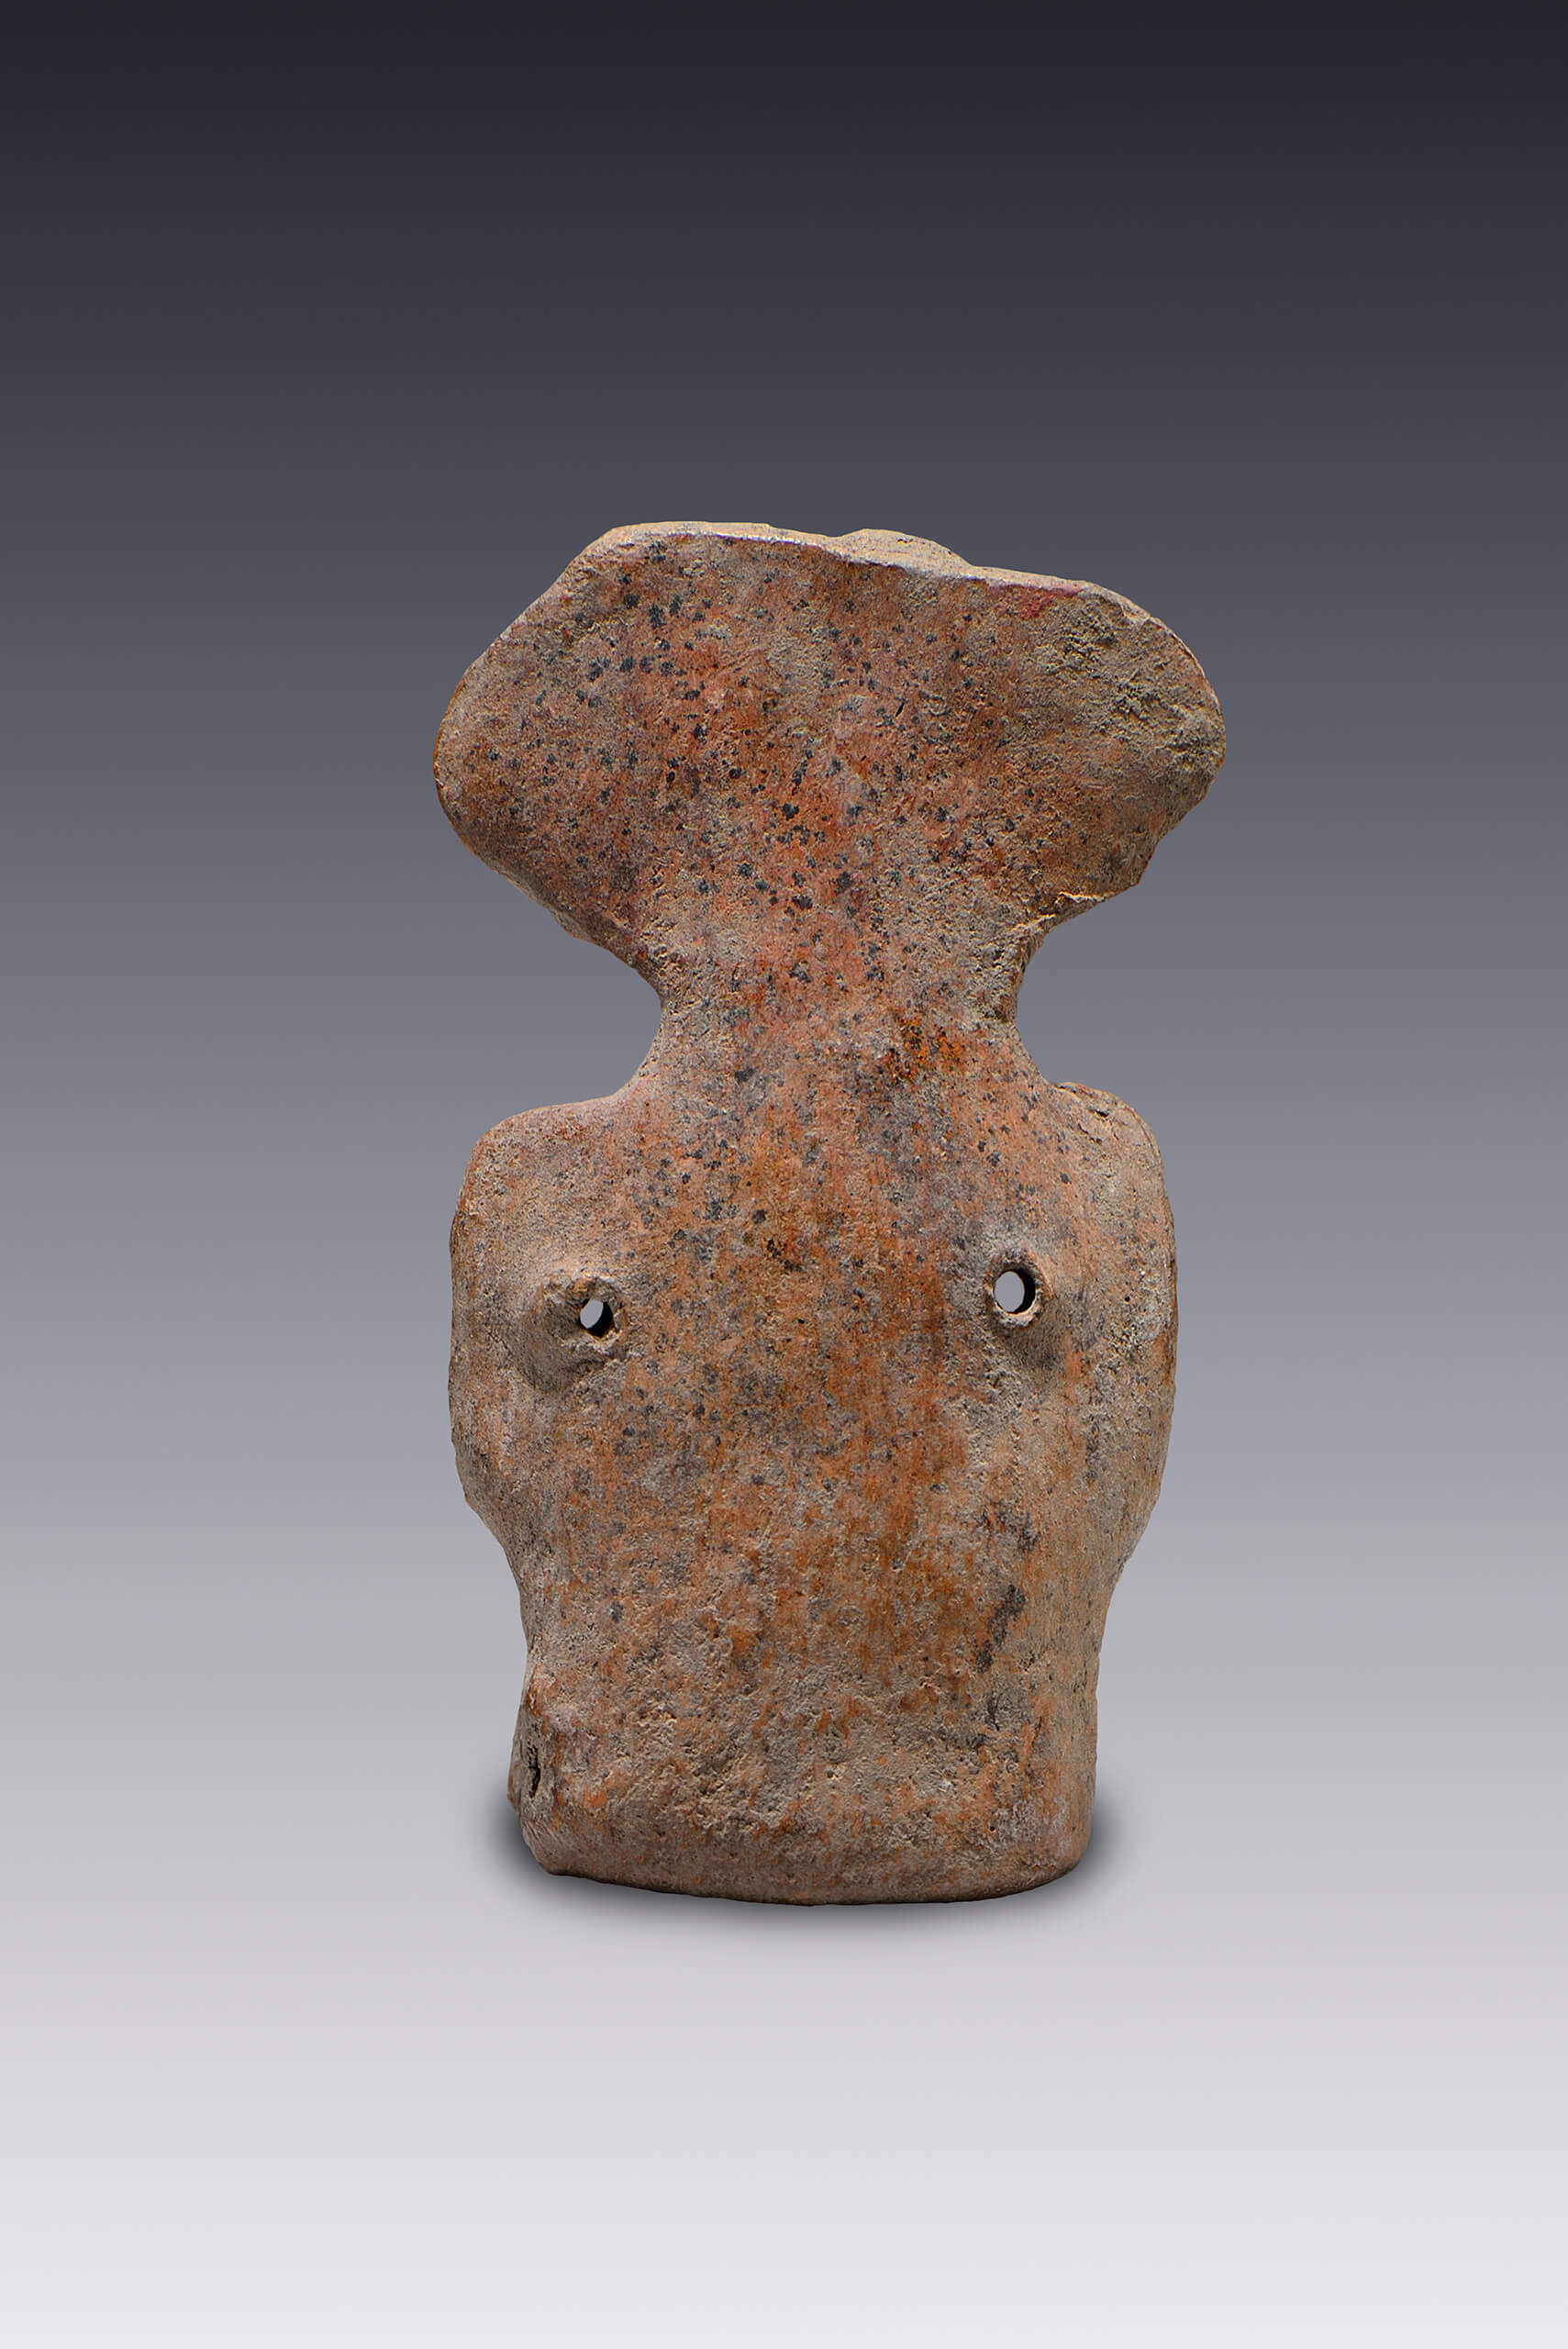 Maraca con forma femenina | El México antiguo. Salas de Arte Prehispánico | Museo Amparo, Puebla